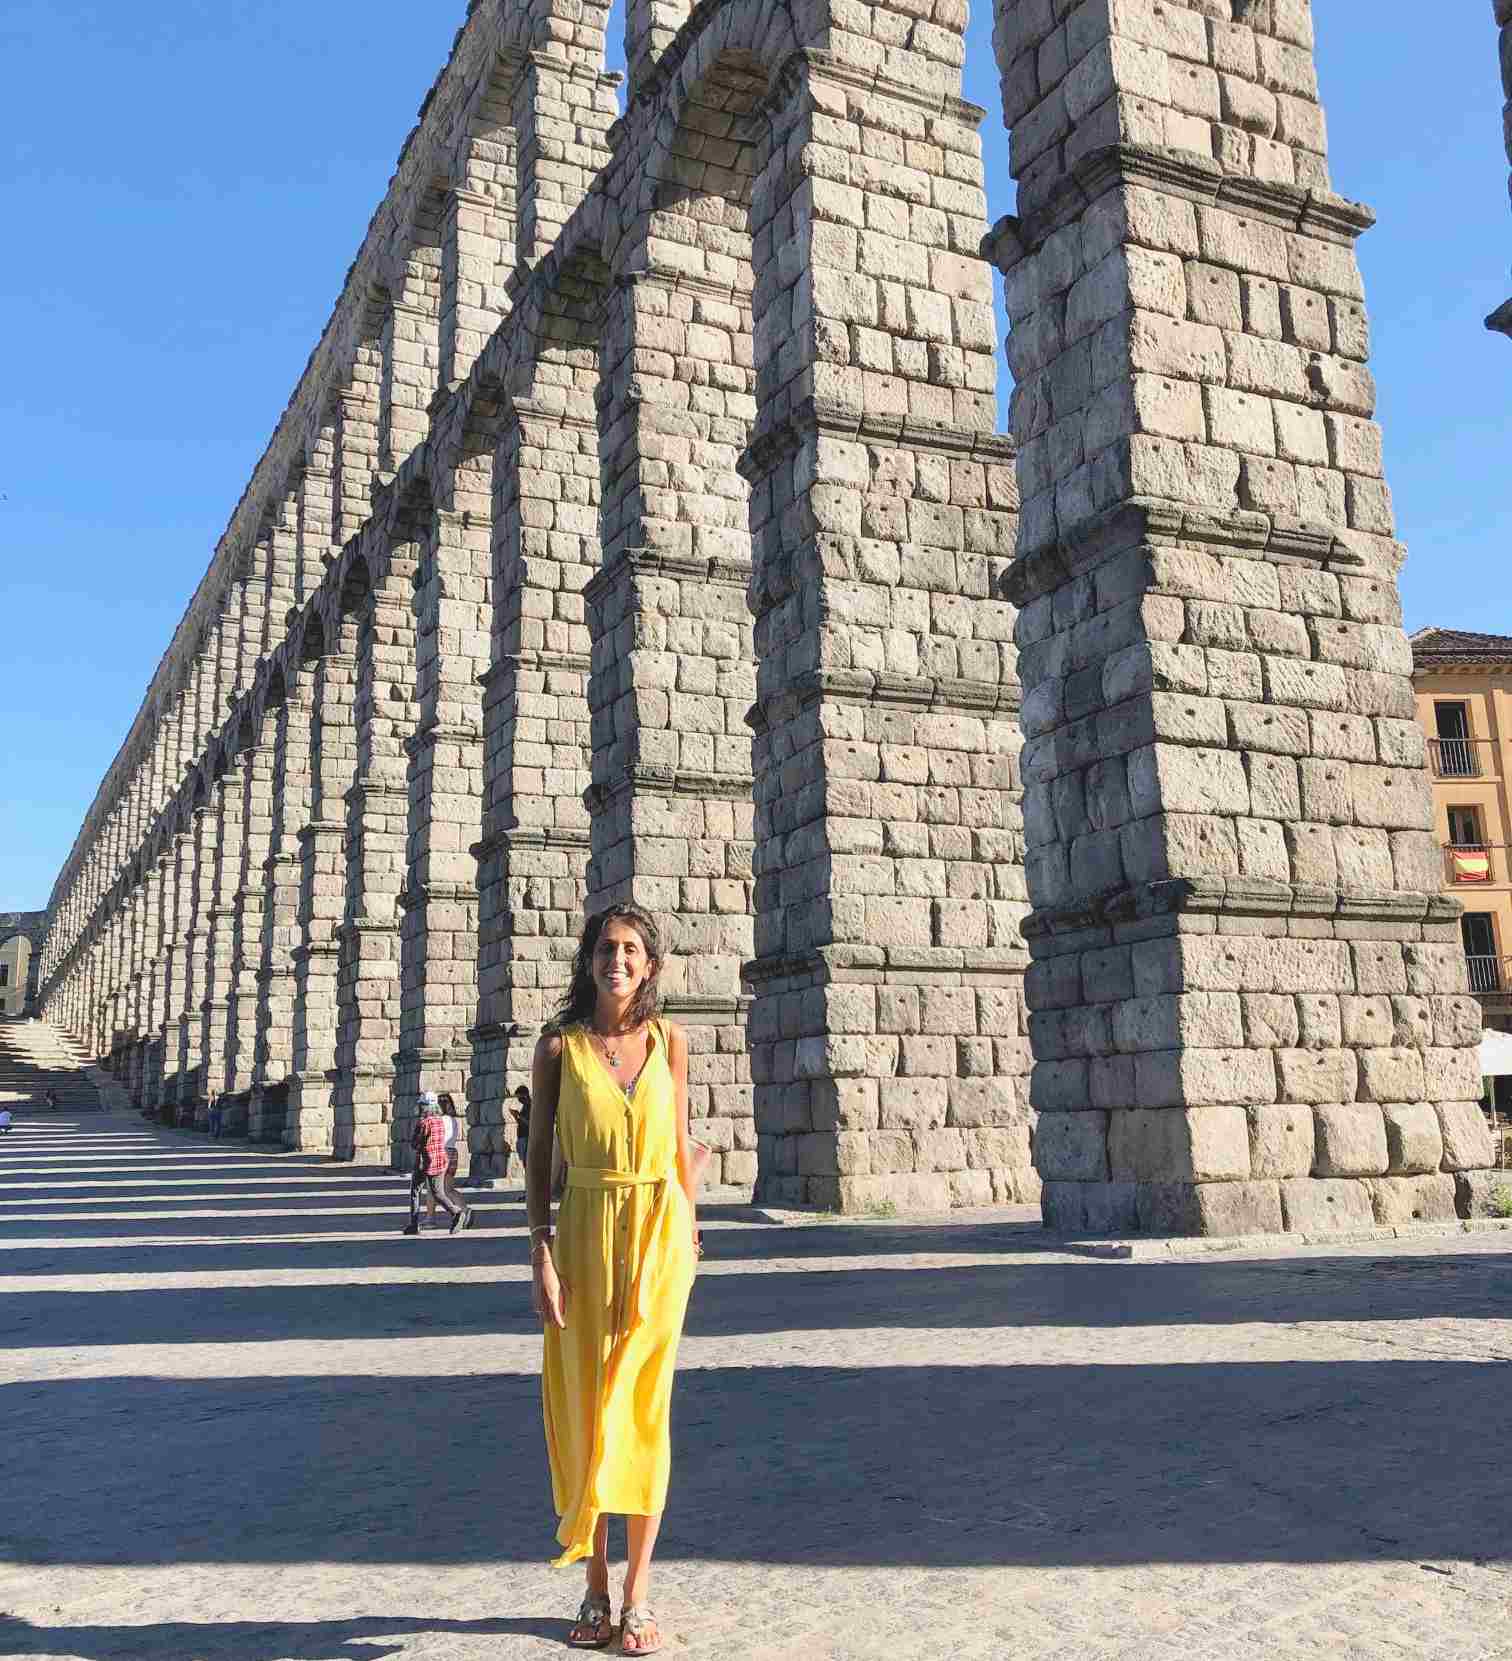 Que hacer en Segovia - Acueducto